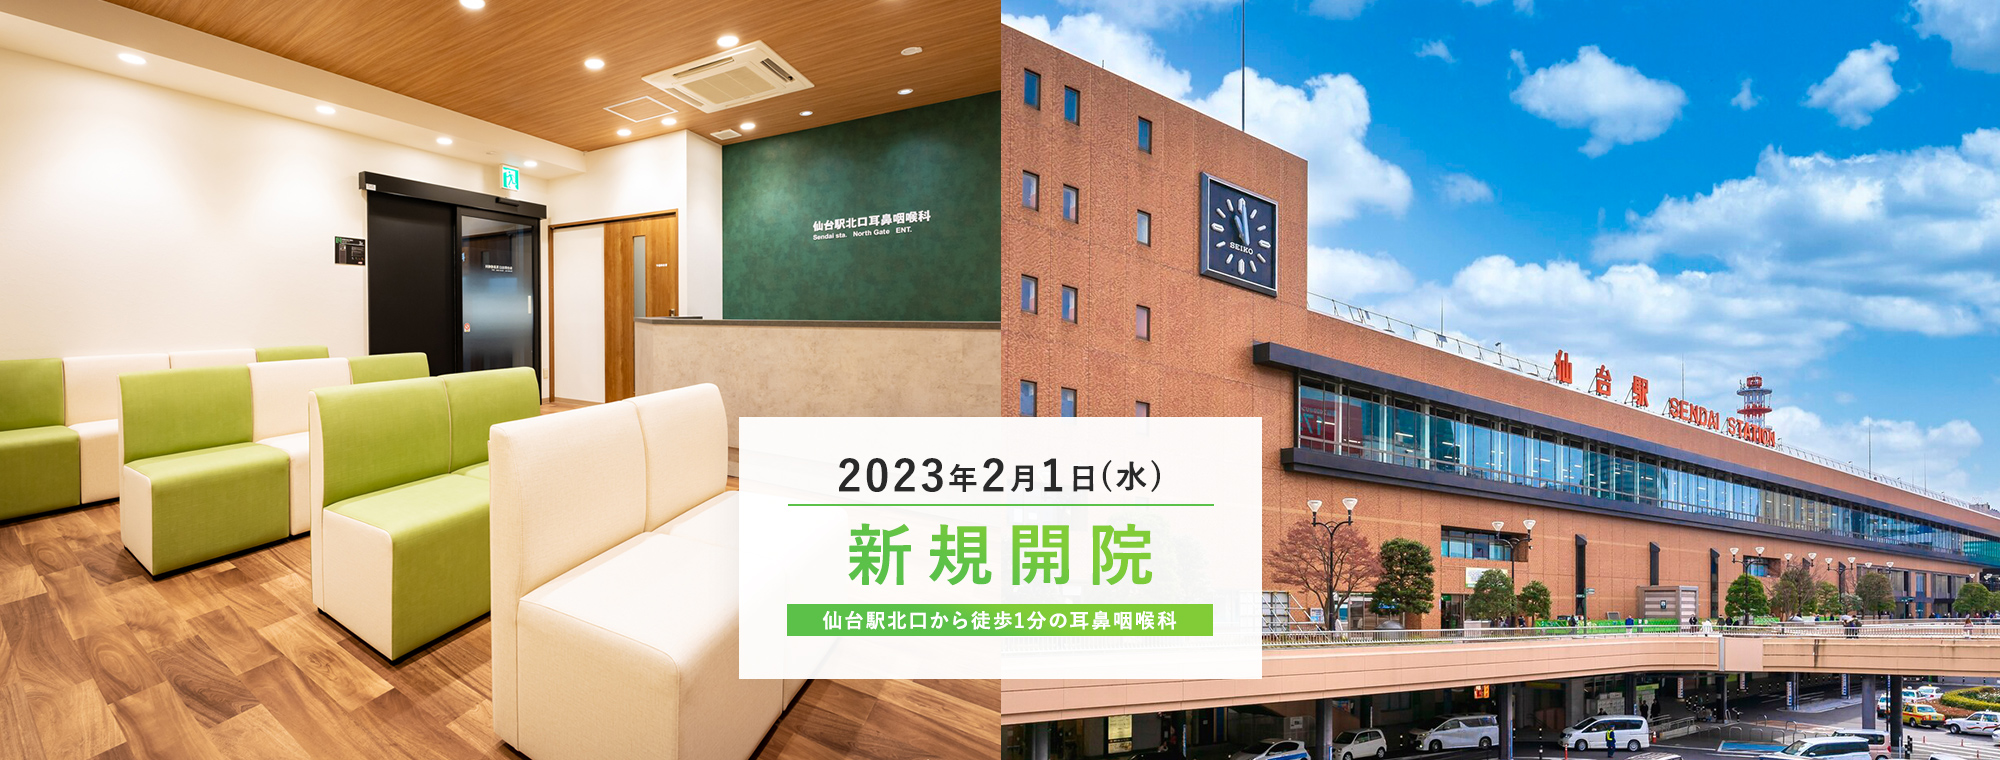 2023年2月1日(水) 新規開院 仙台駅北口から徒歩1分の耳鼻咽喉科